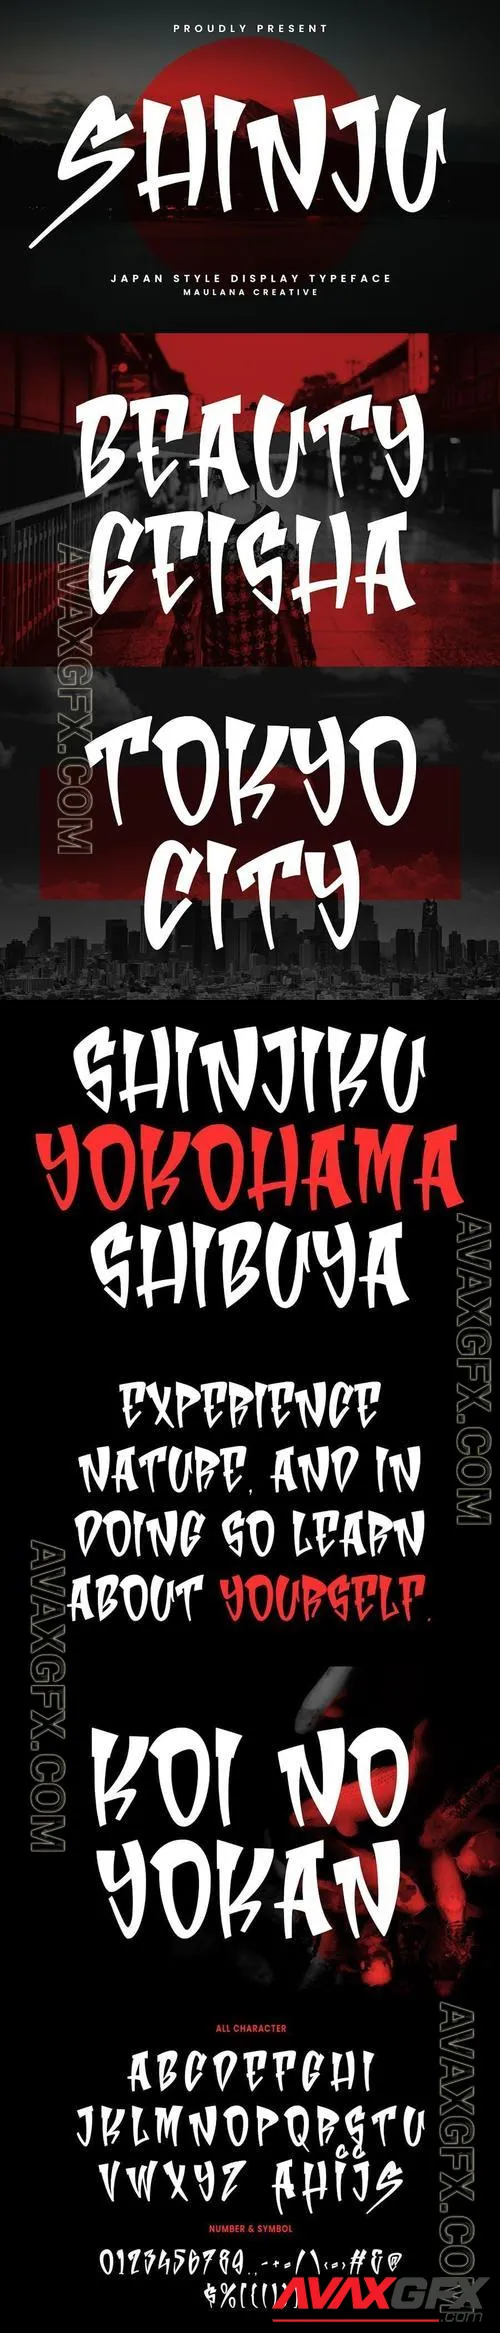 Shinju Display Japanese Handmade Font Typeface